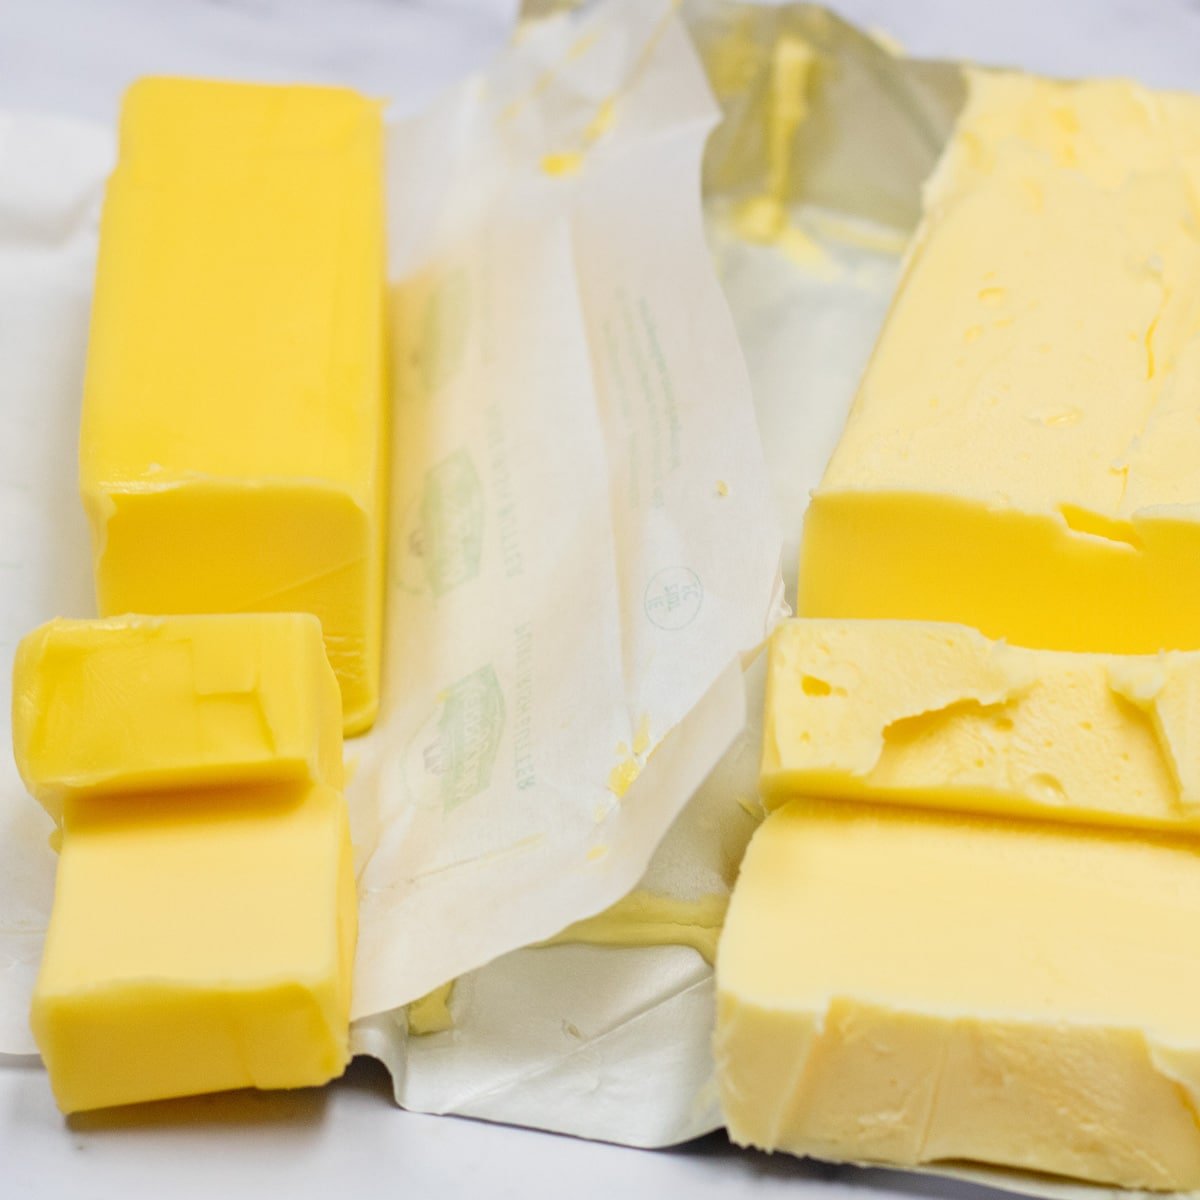 Image côte à côte du beurre par rapport au shortening comparant les emballages ouverts.